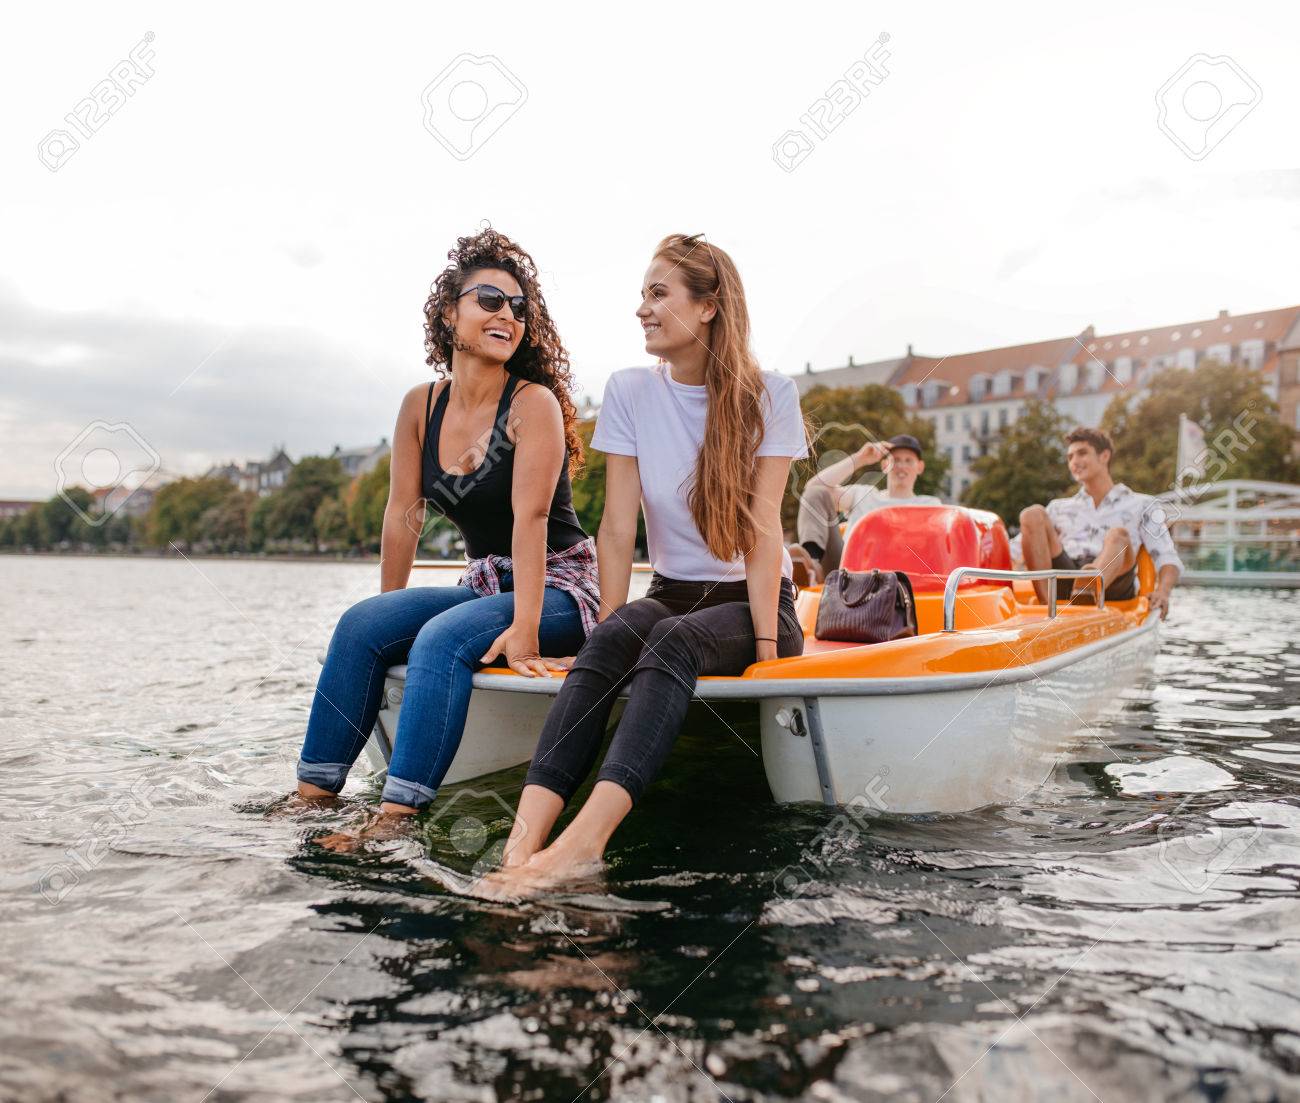 Protein reccomend Boat women